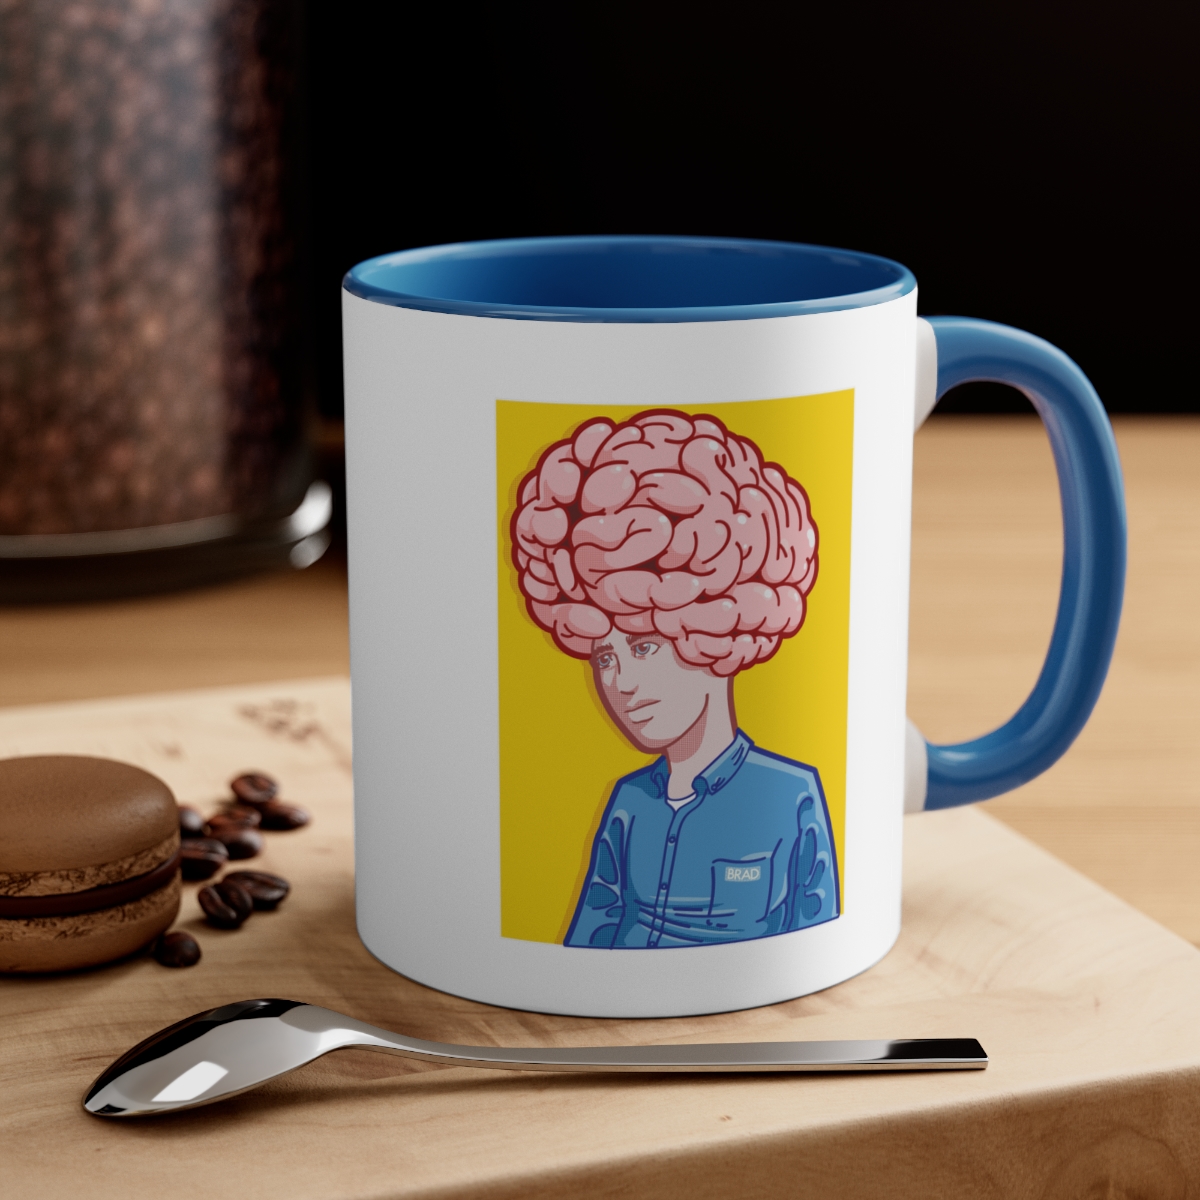 Big Brain - Accent Coffee Mug, 11oz